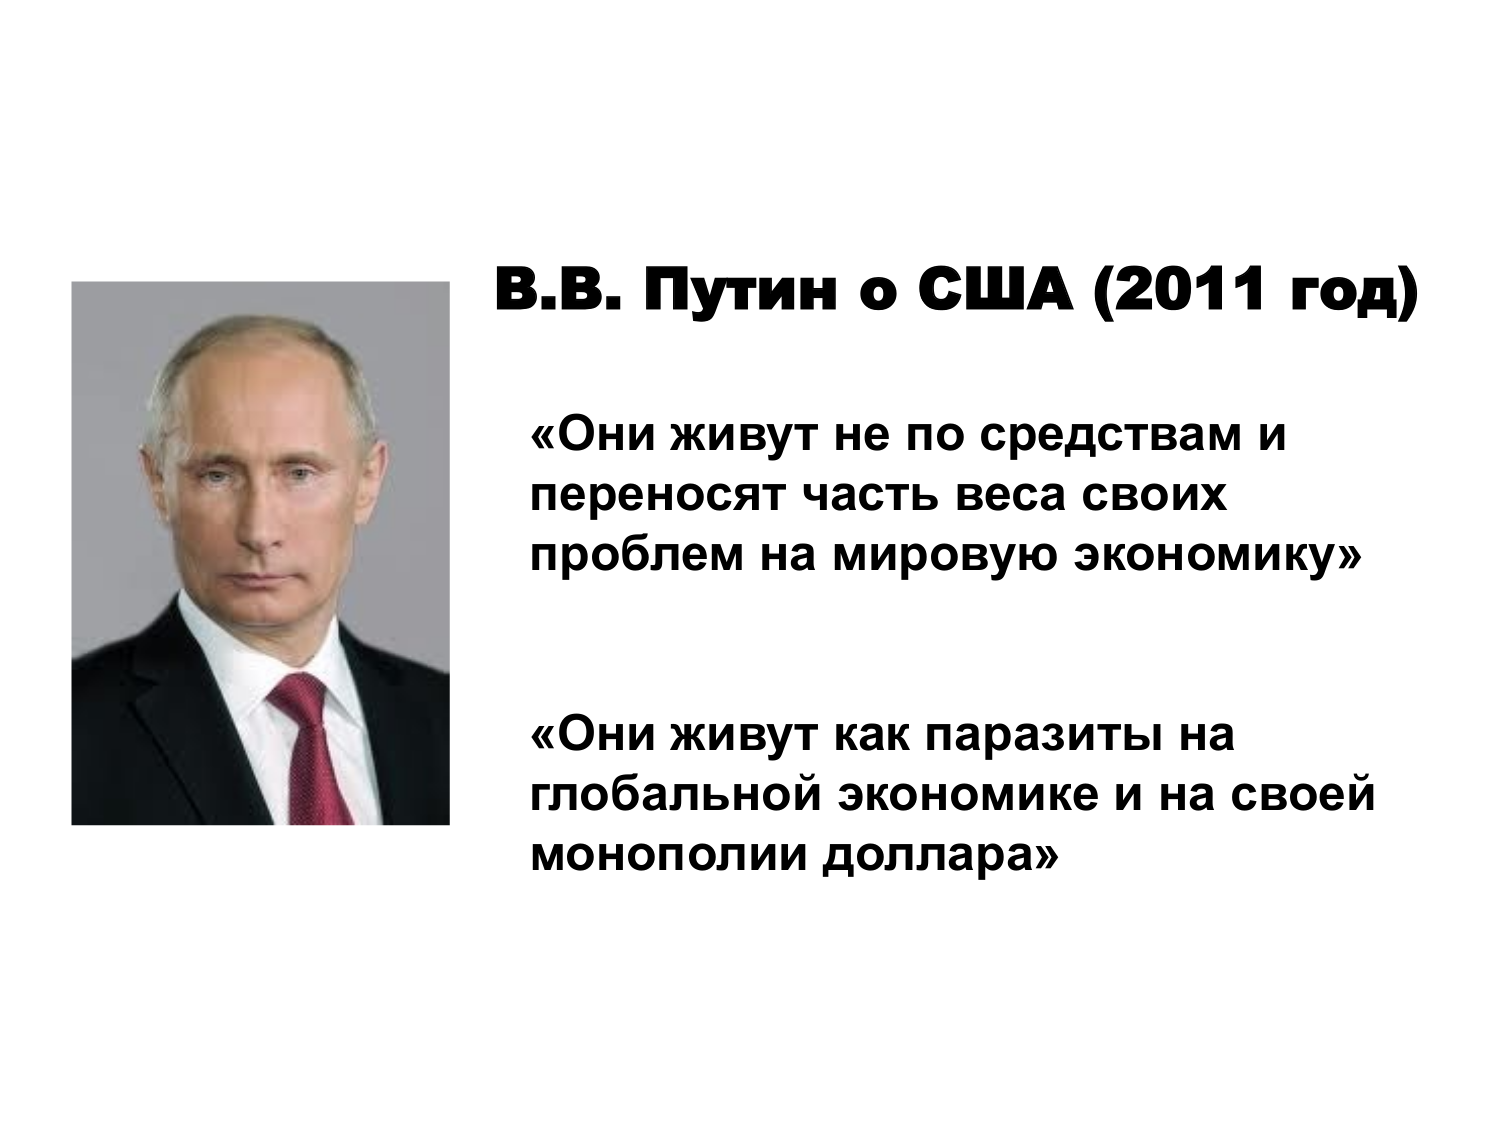 Мнение народа о путине. Высказывания Путина. Цитаты Путина о США.